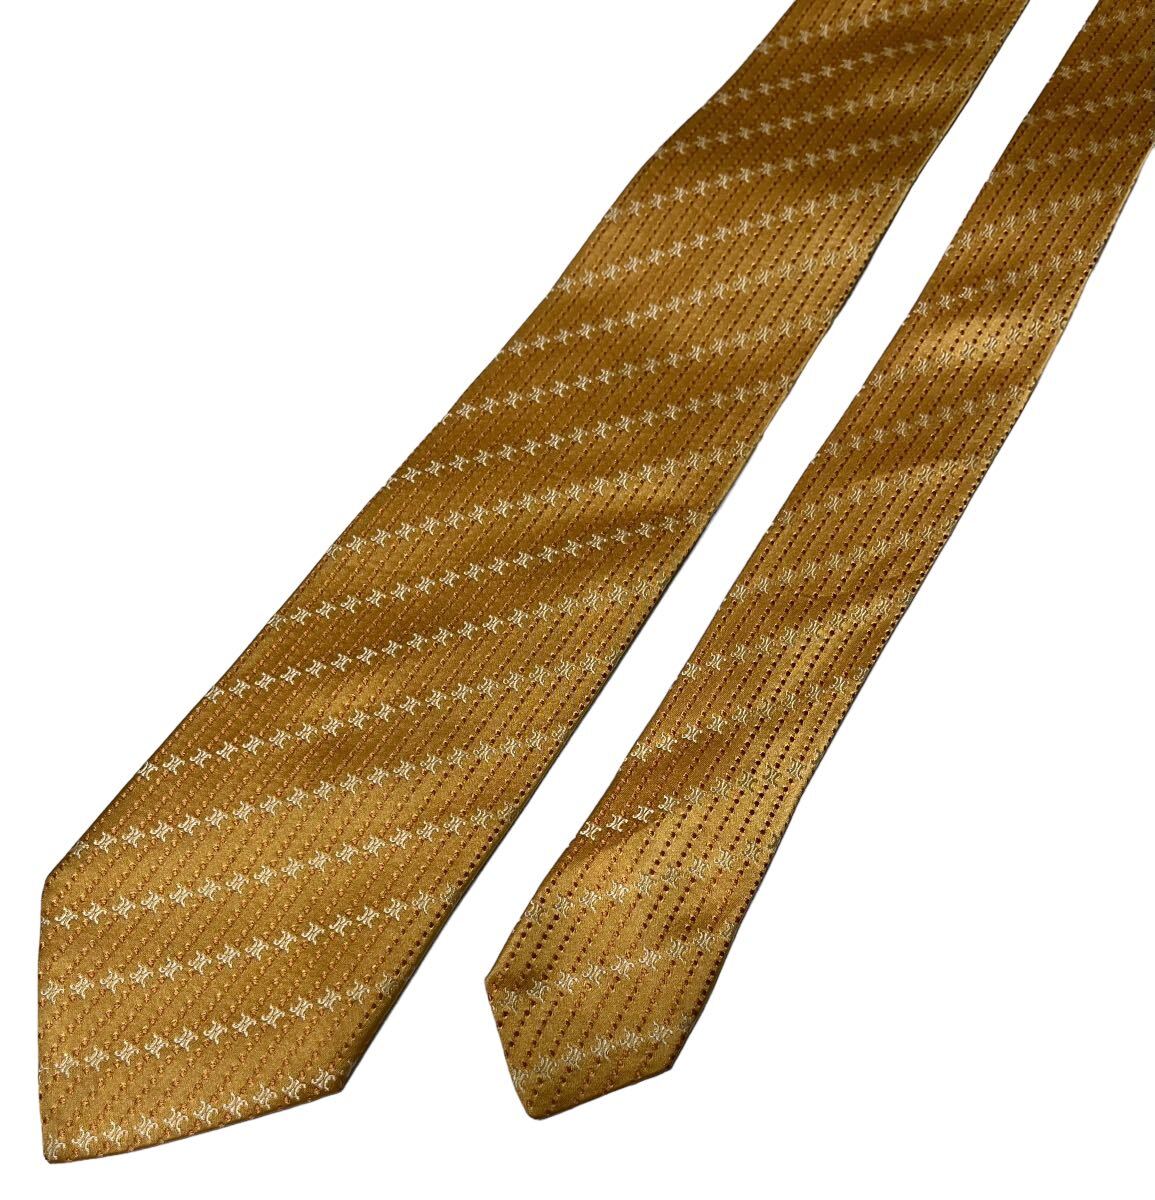 CELINE necktie Macadam pattern dot pattern reji men taru pattern stripe pattern Celine USED used m845